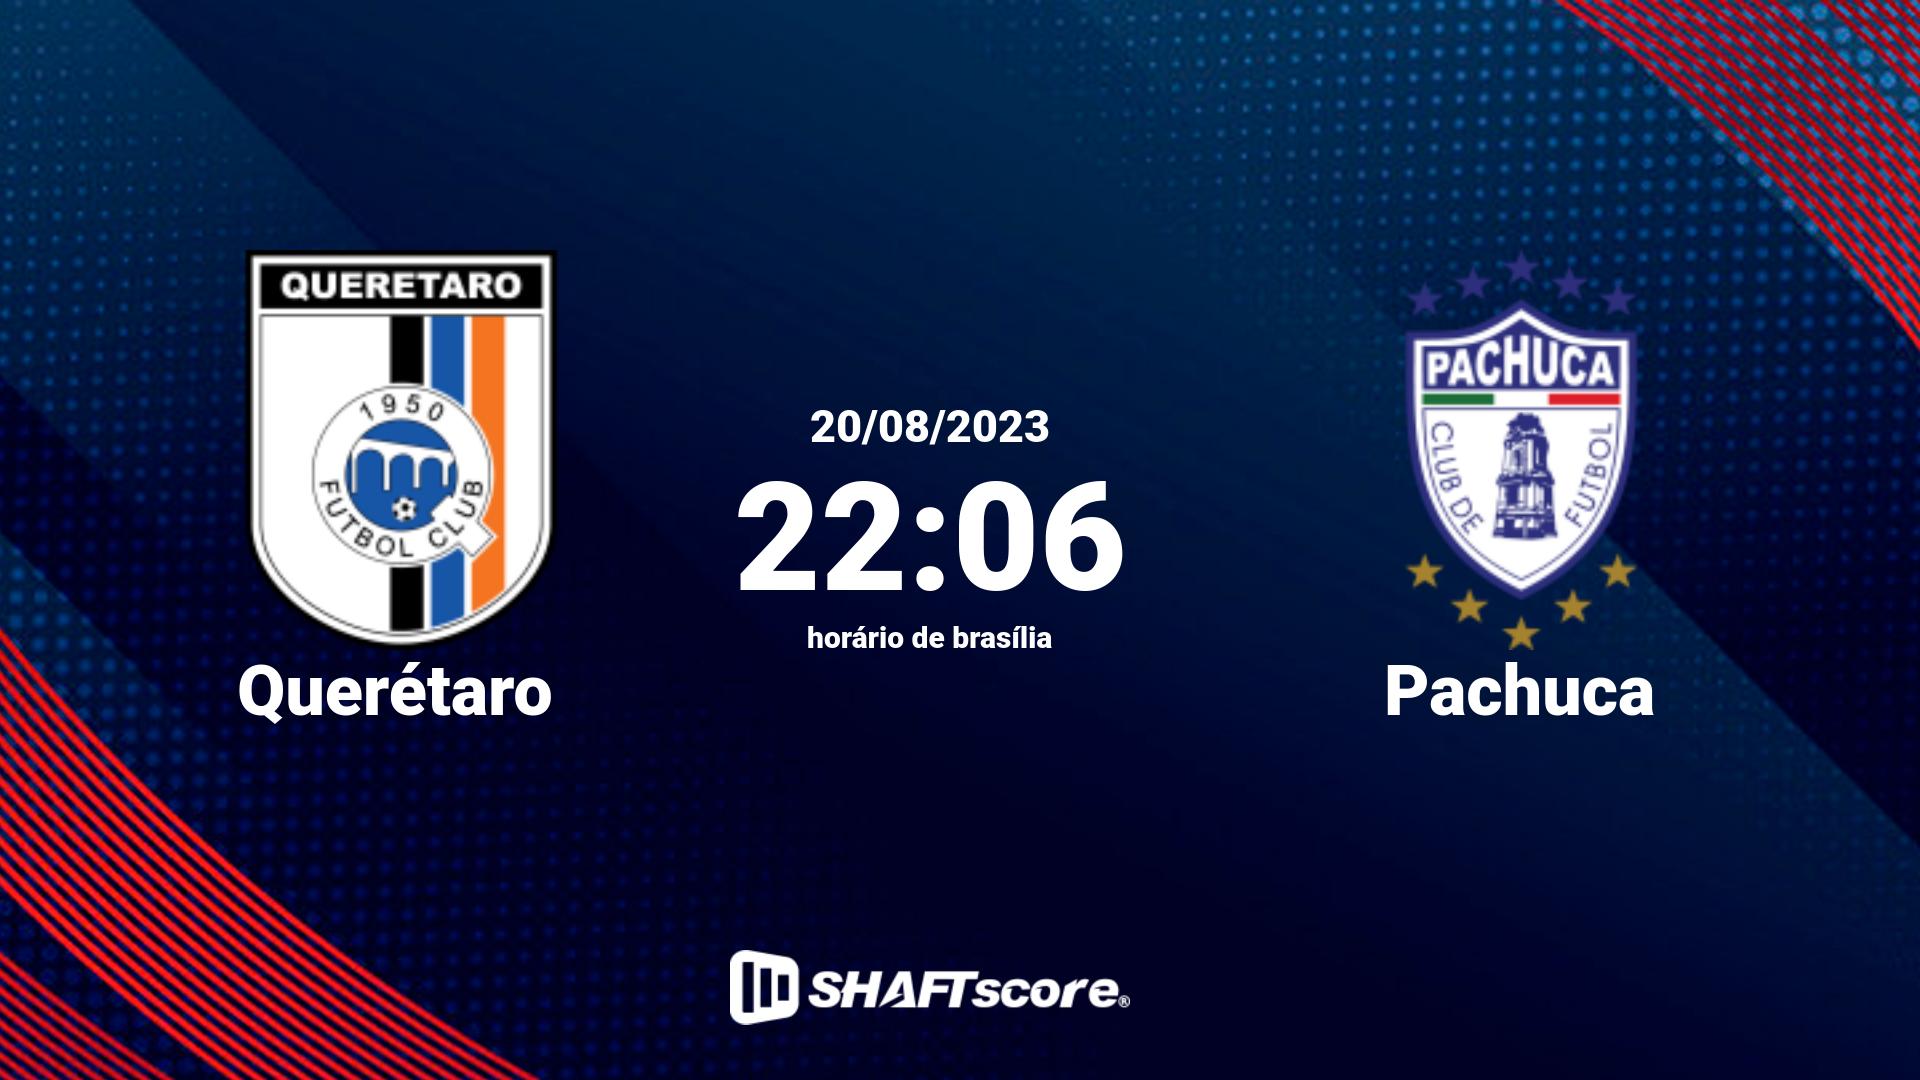 Estatísticas do jogo Querétaro vs Pachuca 20.08 22:06